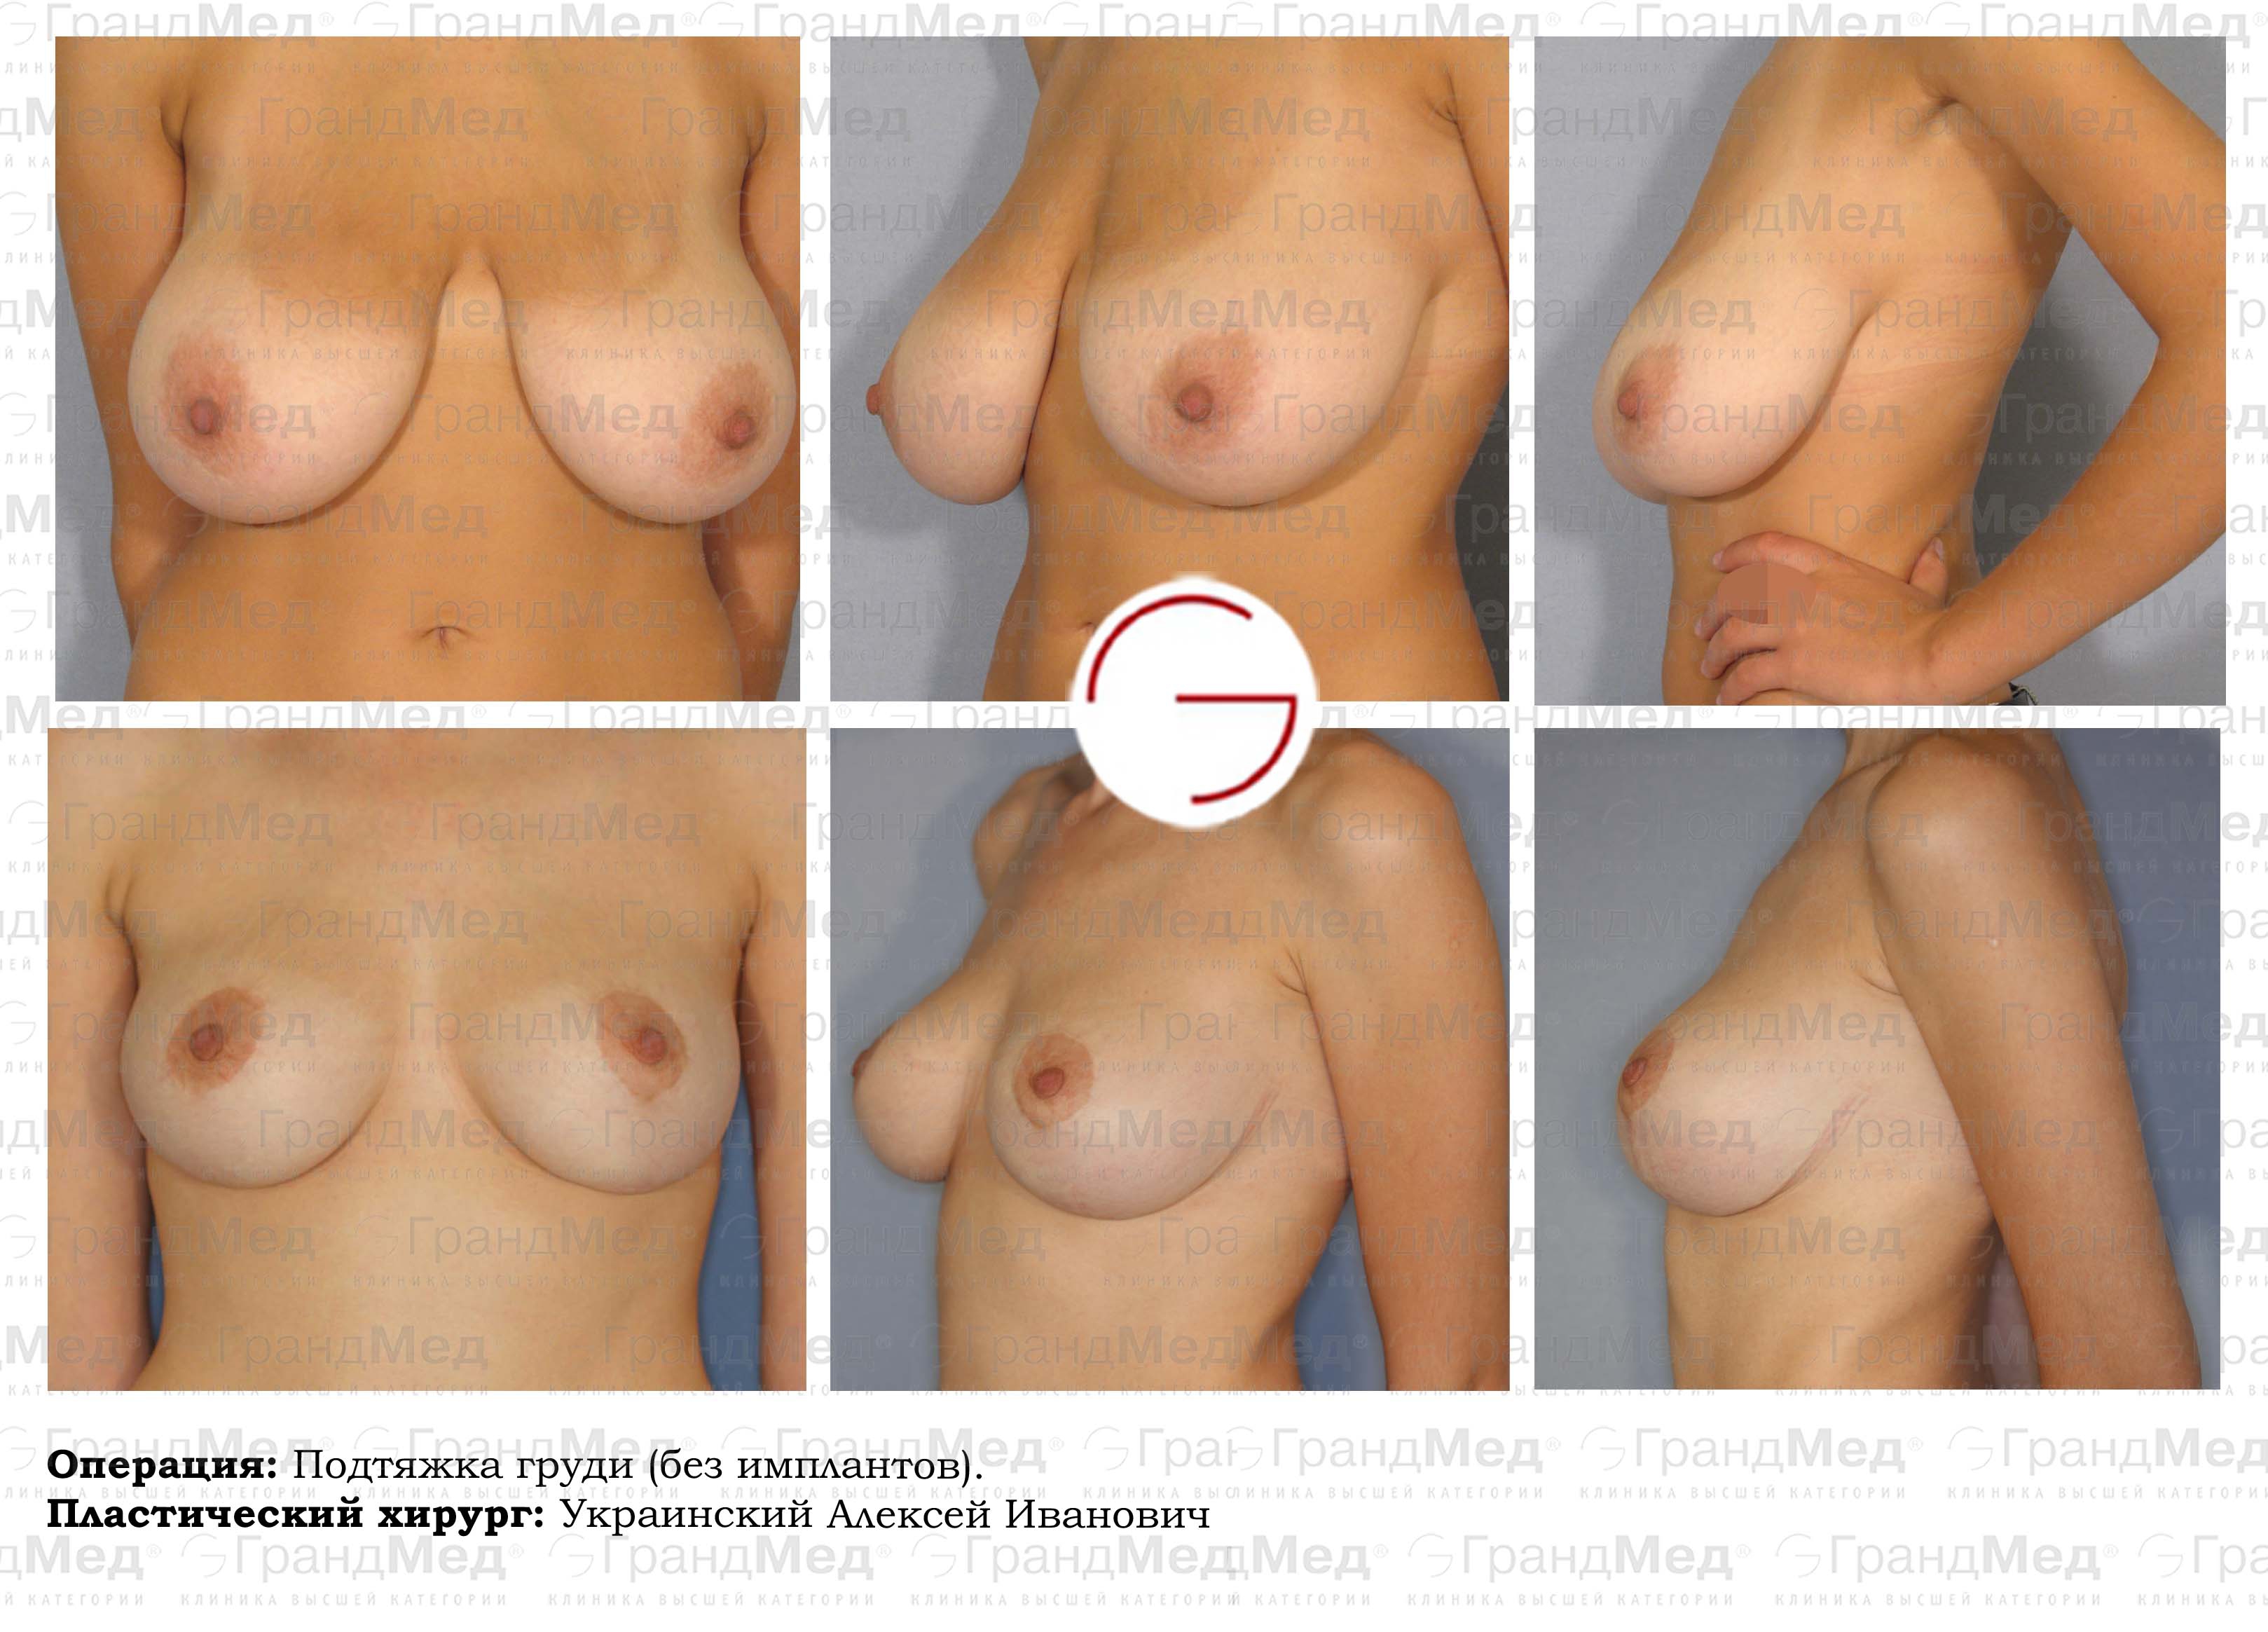 уменьшение груди у женщин фото 99